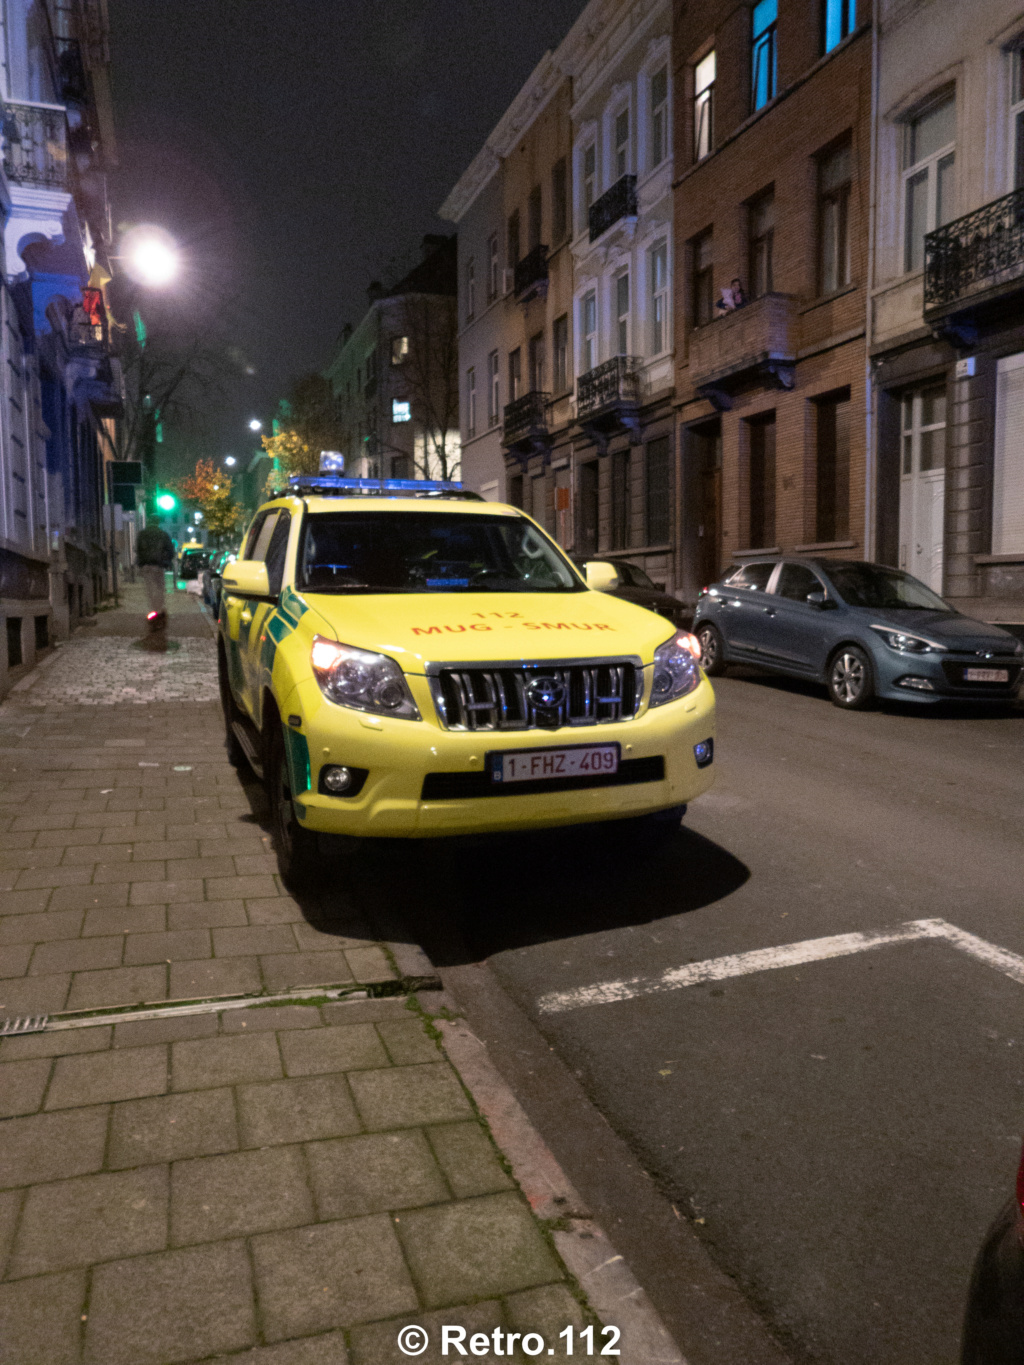 Intervention RISC - Assistance à l'ambulance - Schaerbeek (Bruxelles) - 24/01/2021 Dscn4910